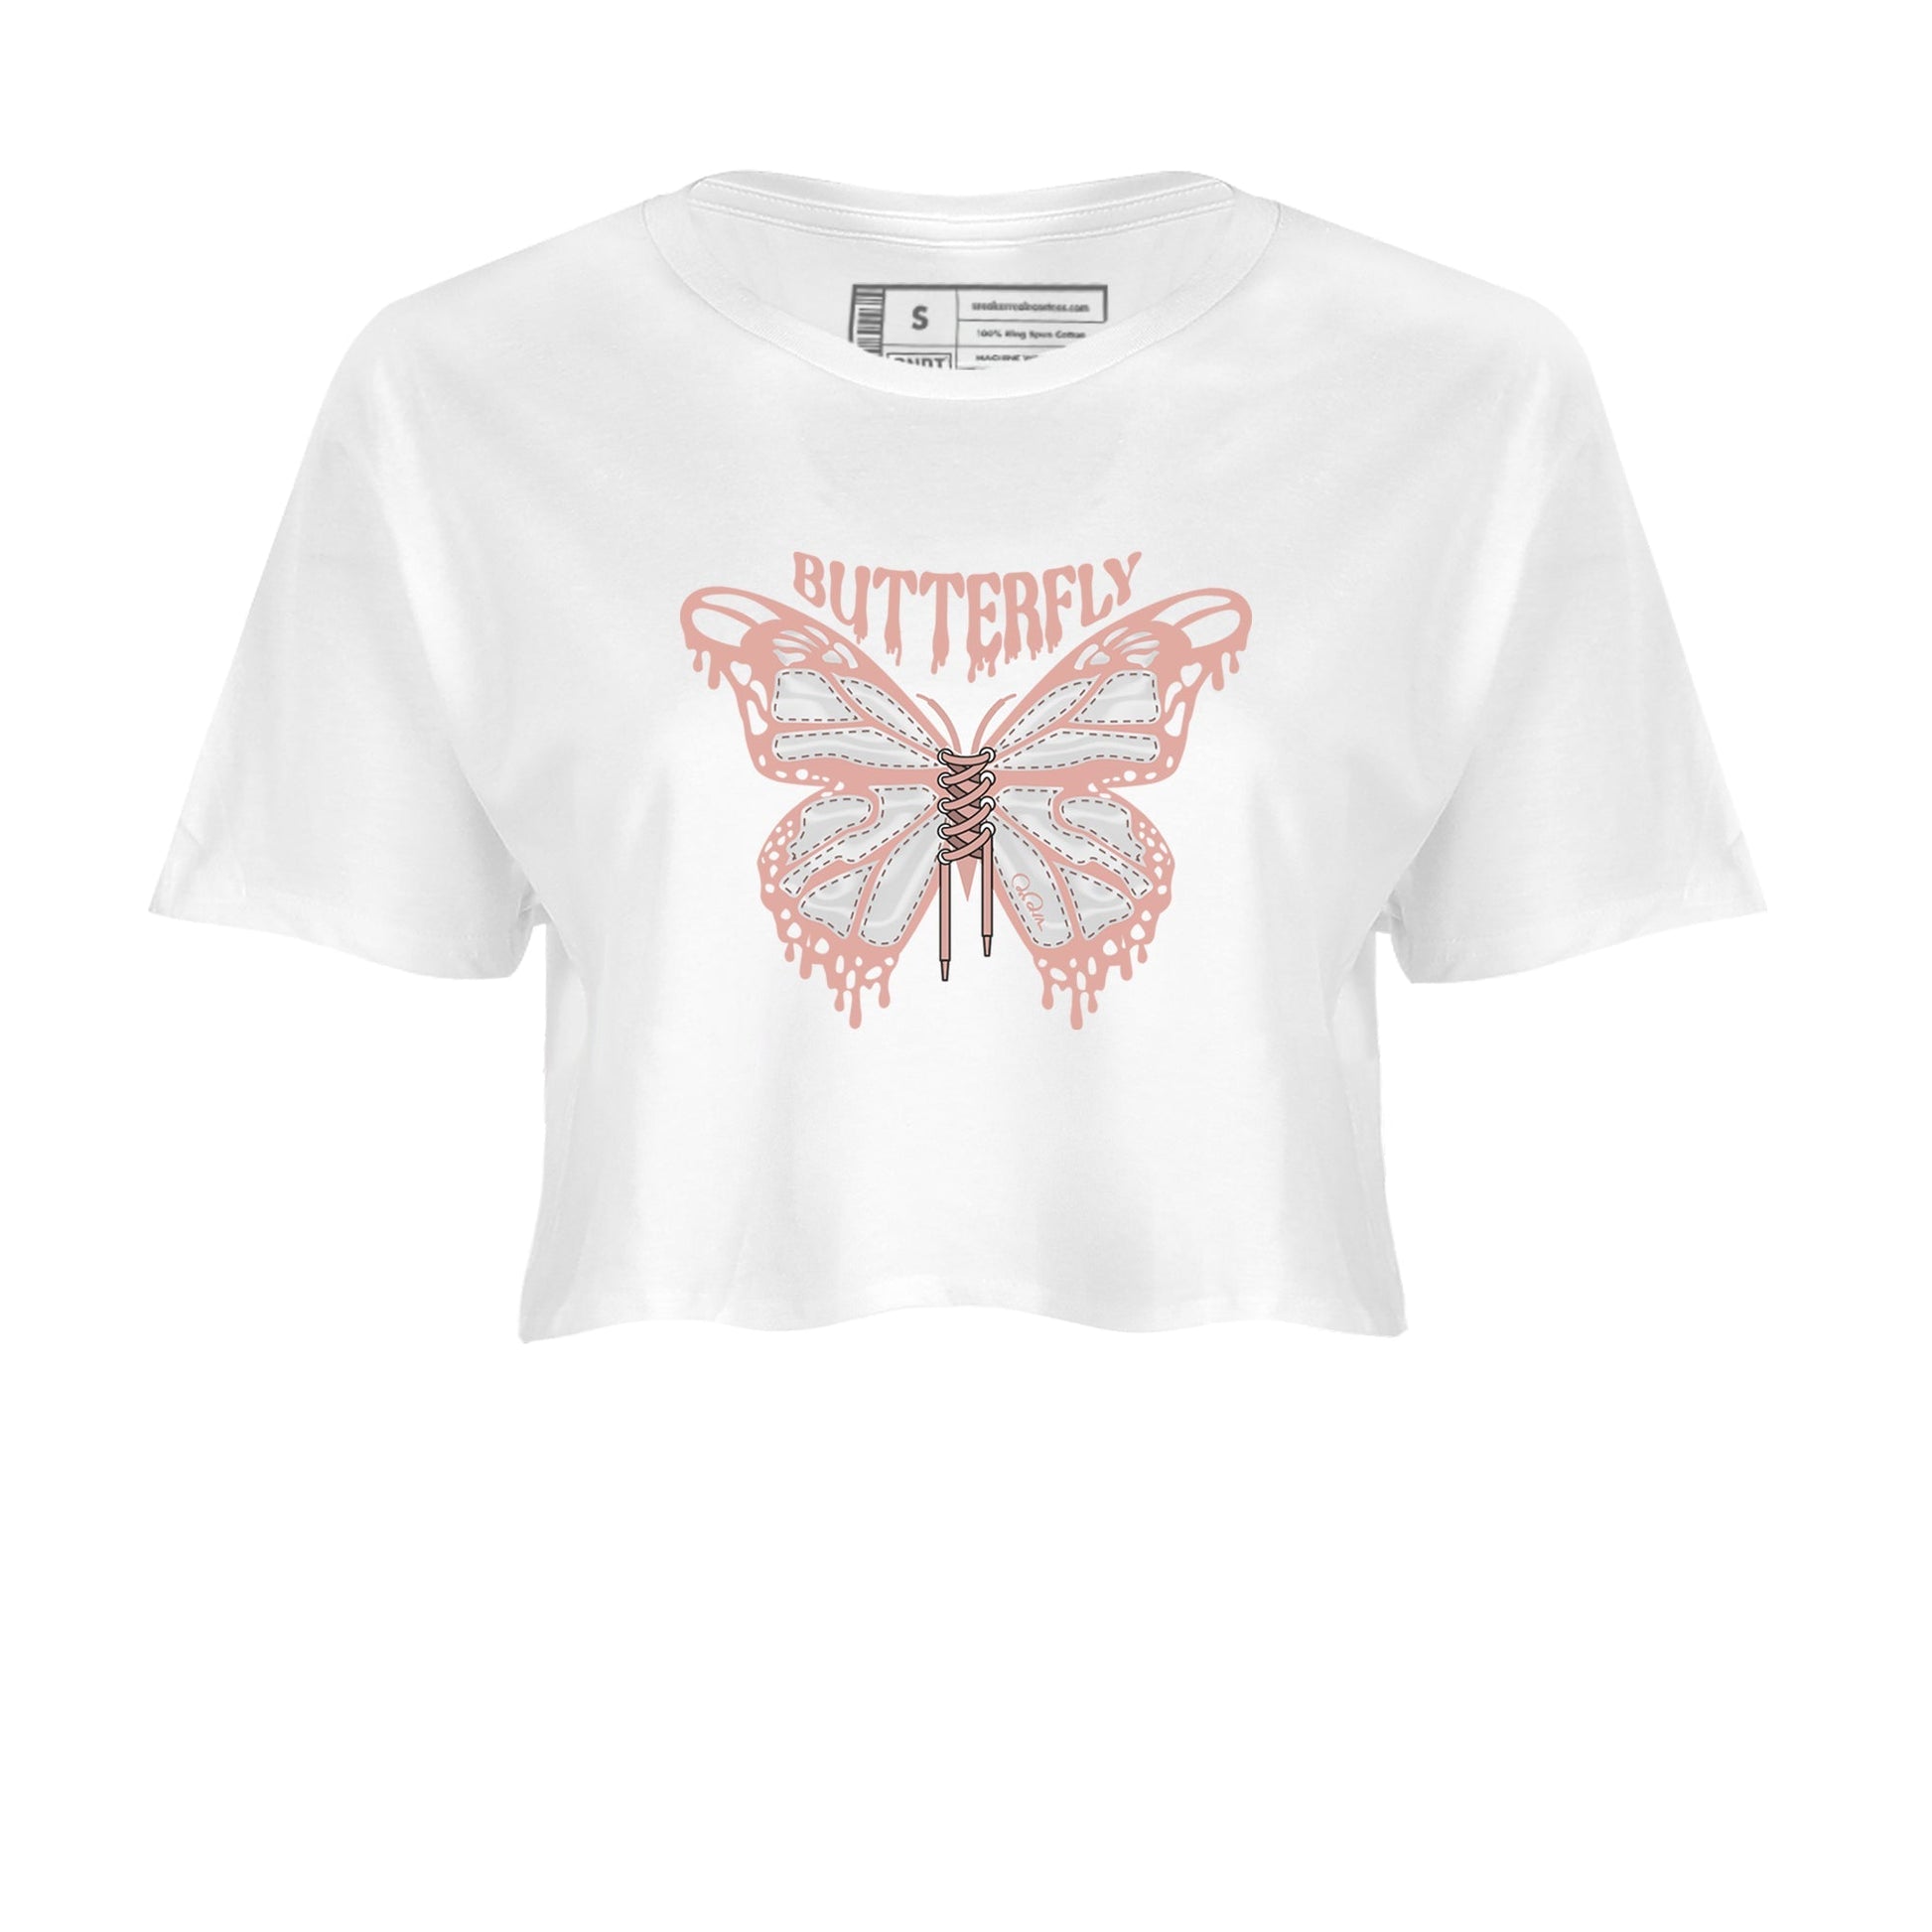 Dunk Rose Whisper shirt to match jordans Butterfly Streetwear Sneaker Shirt Nike Dunk LowRose Whisper Drip Gear Zone Sneaker Matching Clothing White 2 Crop T-Shirt